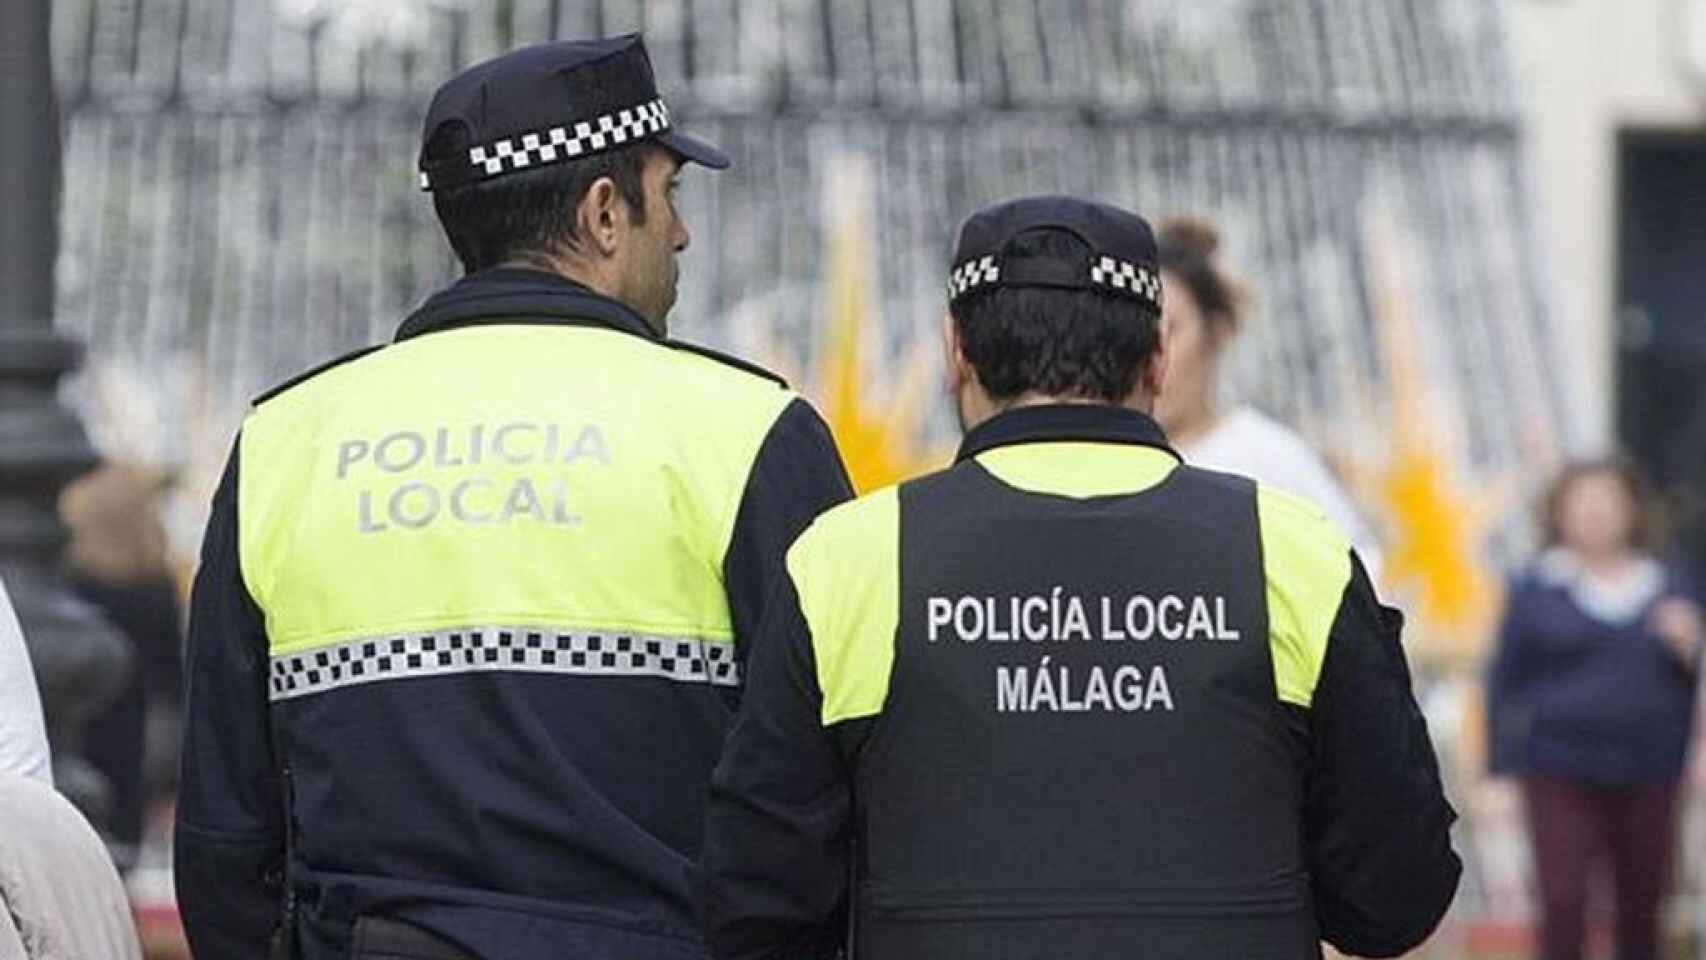 La Policía ha detenido al hombre en Málaga. Foto: EFE.